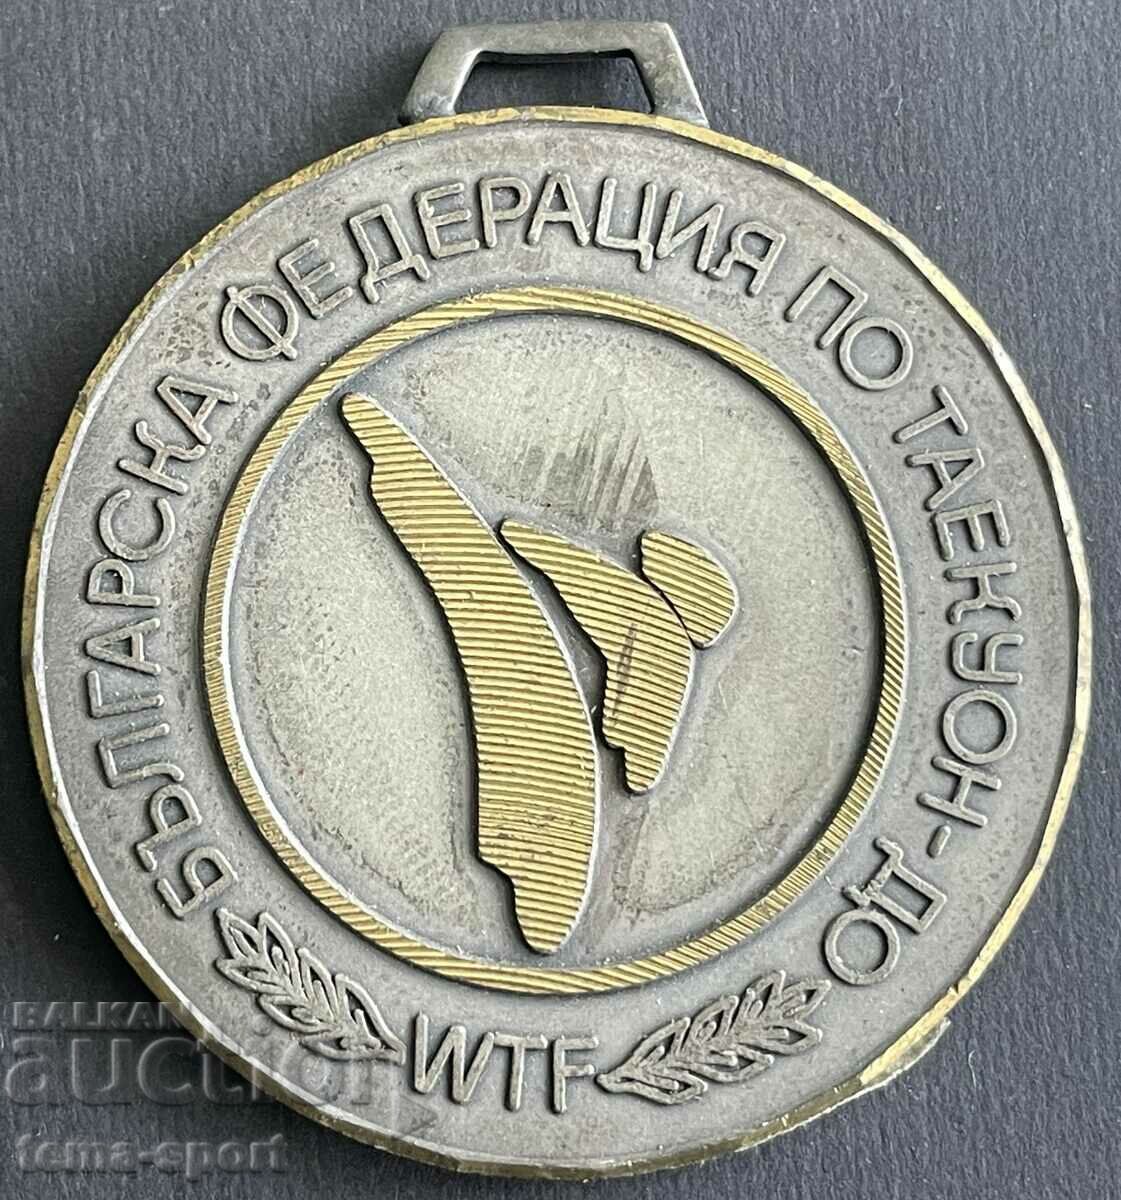 679 България медал Българска федерация Тайкон до 2000г.